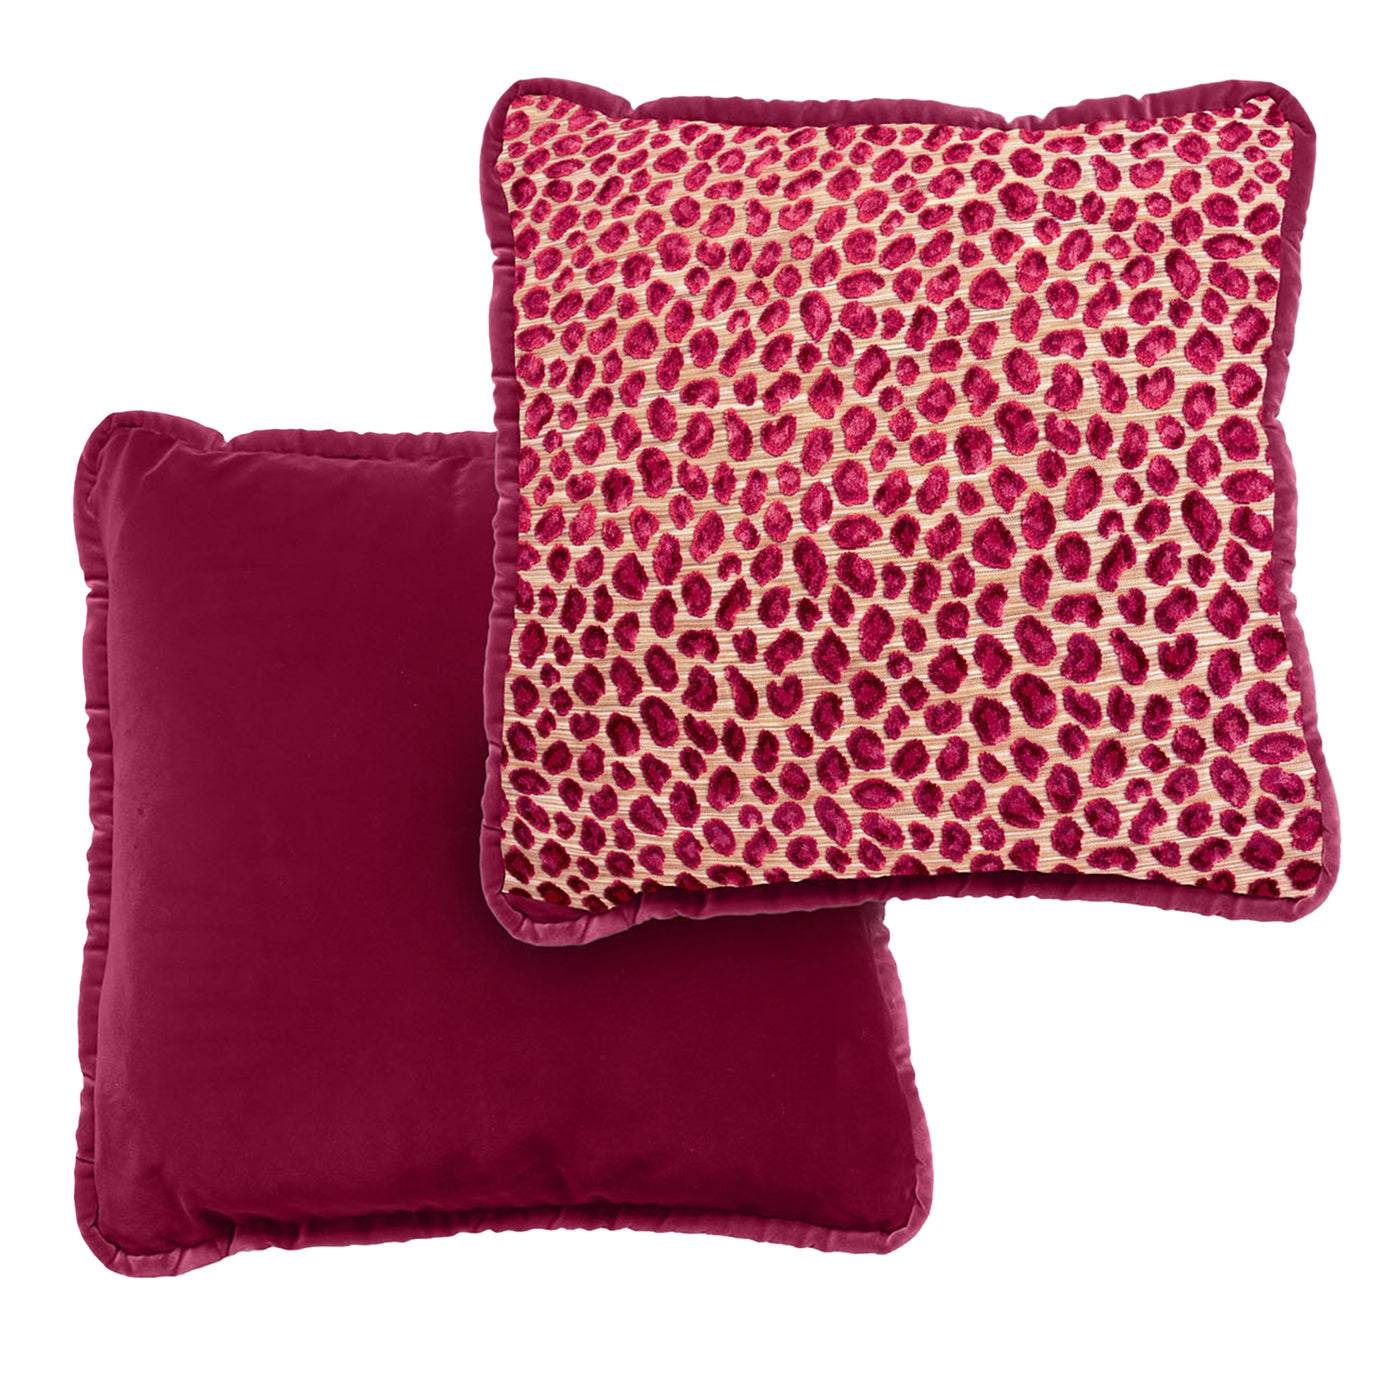 Cuscino reversibile in velluto Couture rosso e leopardo Glam - Vista alternativa 1